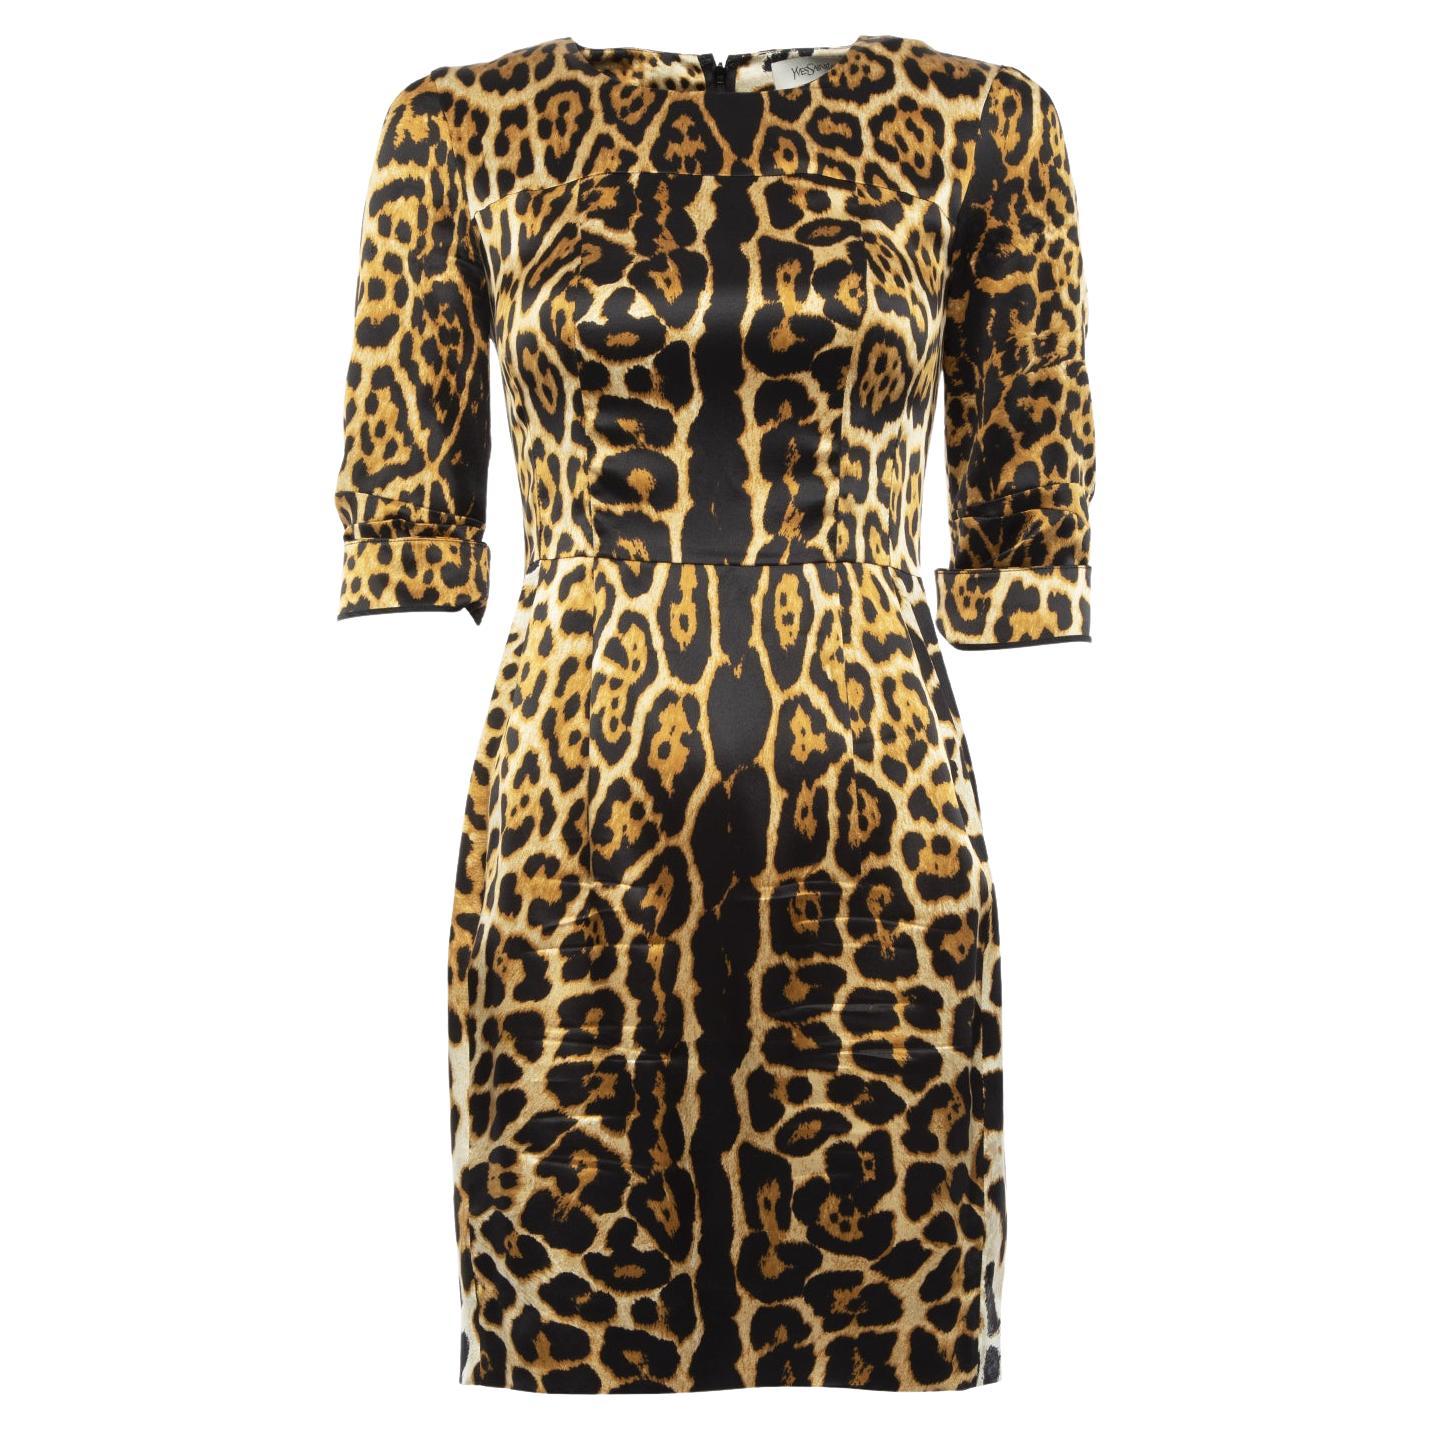 Pre-Loved Yves Saint Laurent Women's Leopard Print Midi Dress